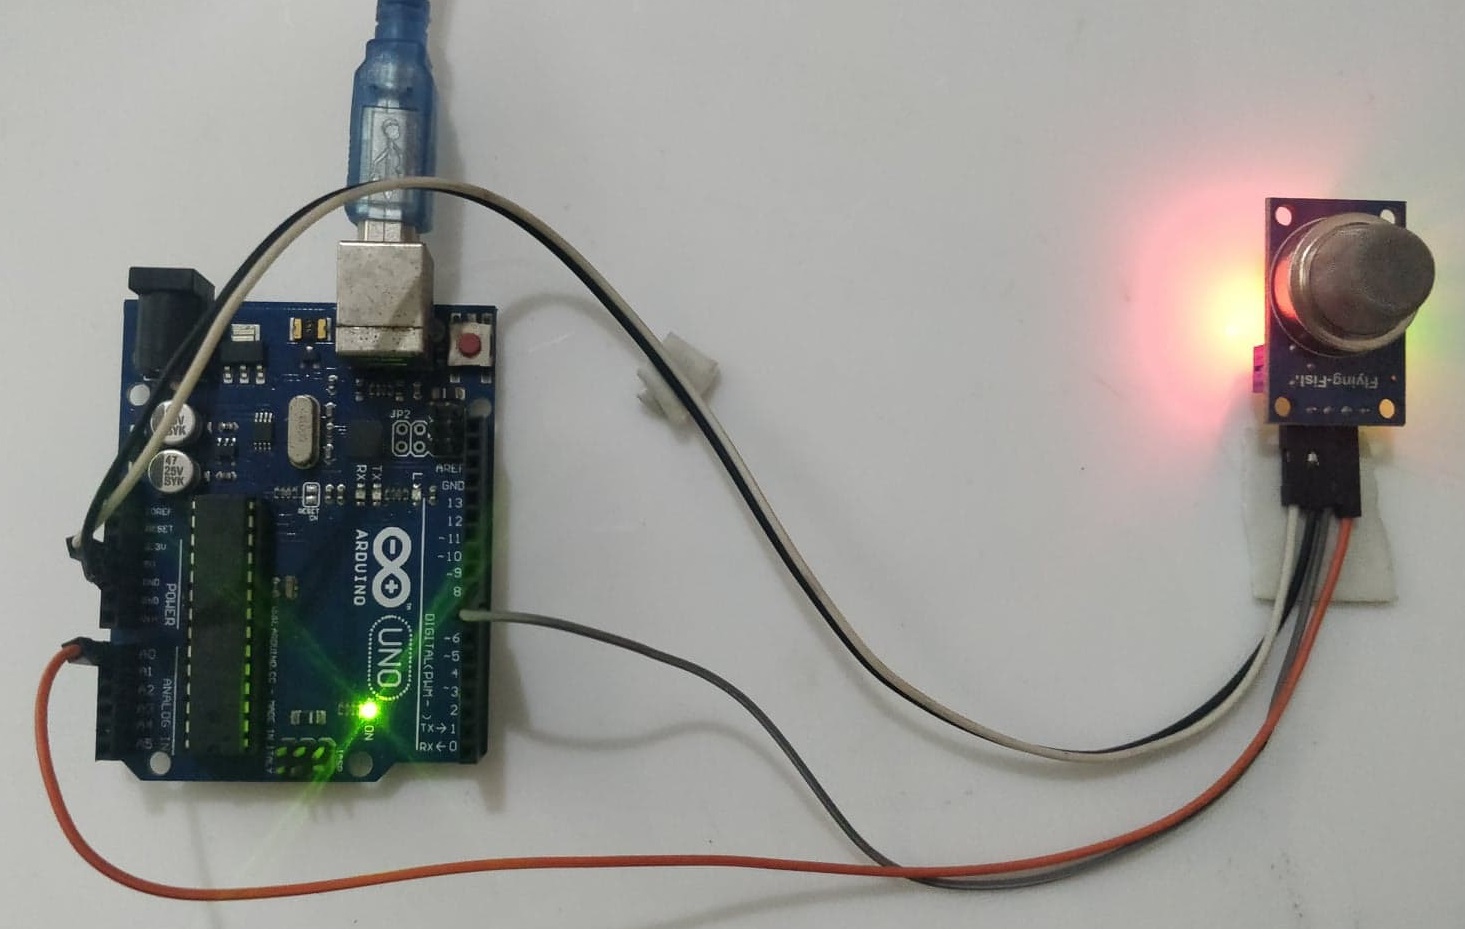 Smoke Detector with Arduino & MQ2 Sensor, Smoke Detector, Smoke Detector with Arduino, Arduino & MQ2 Sensor, mq2 arduino, arduino mq2, gas sensor with arduino, arduino gas sensor